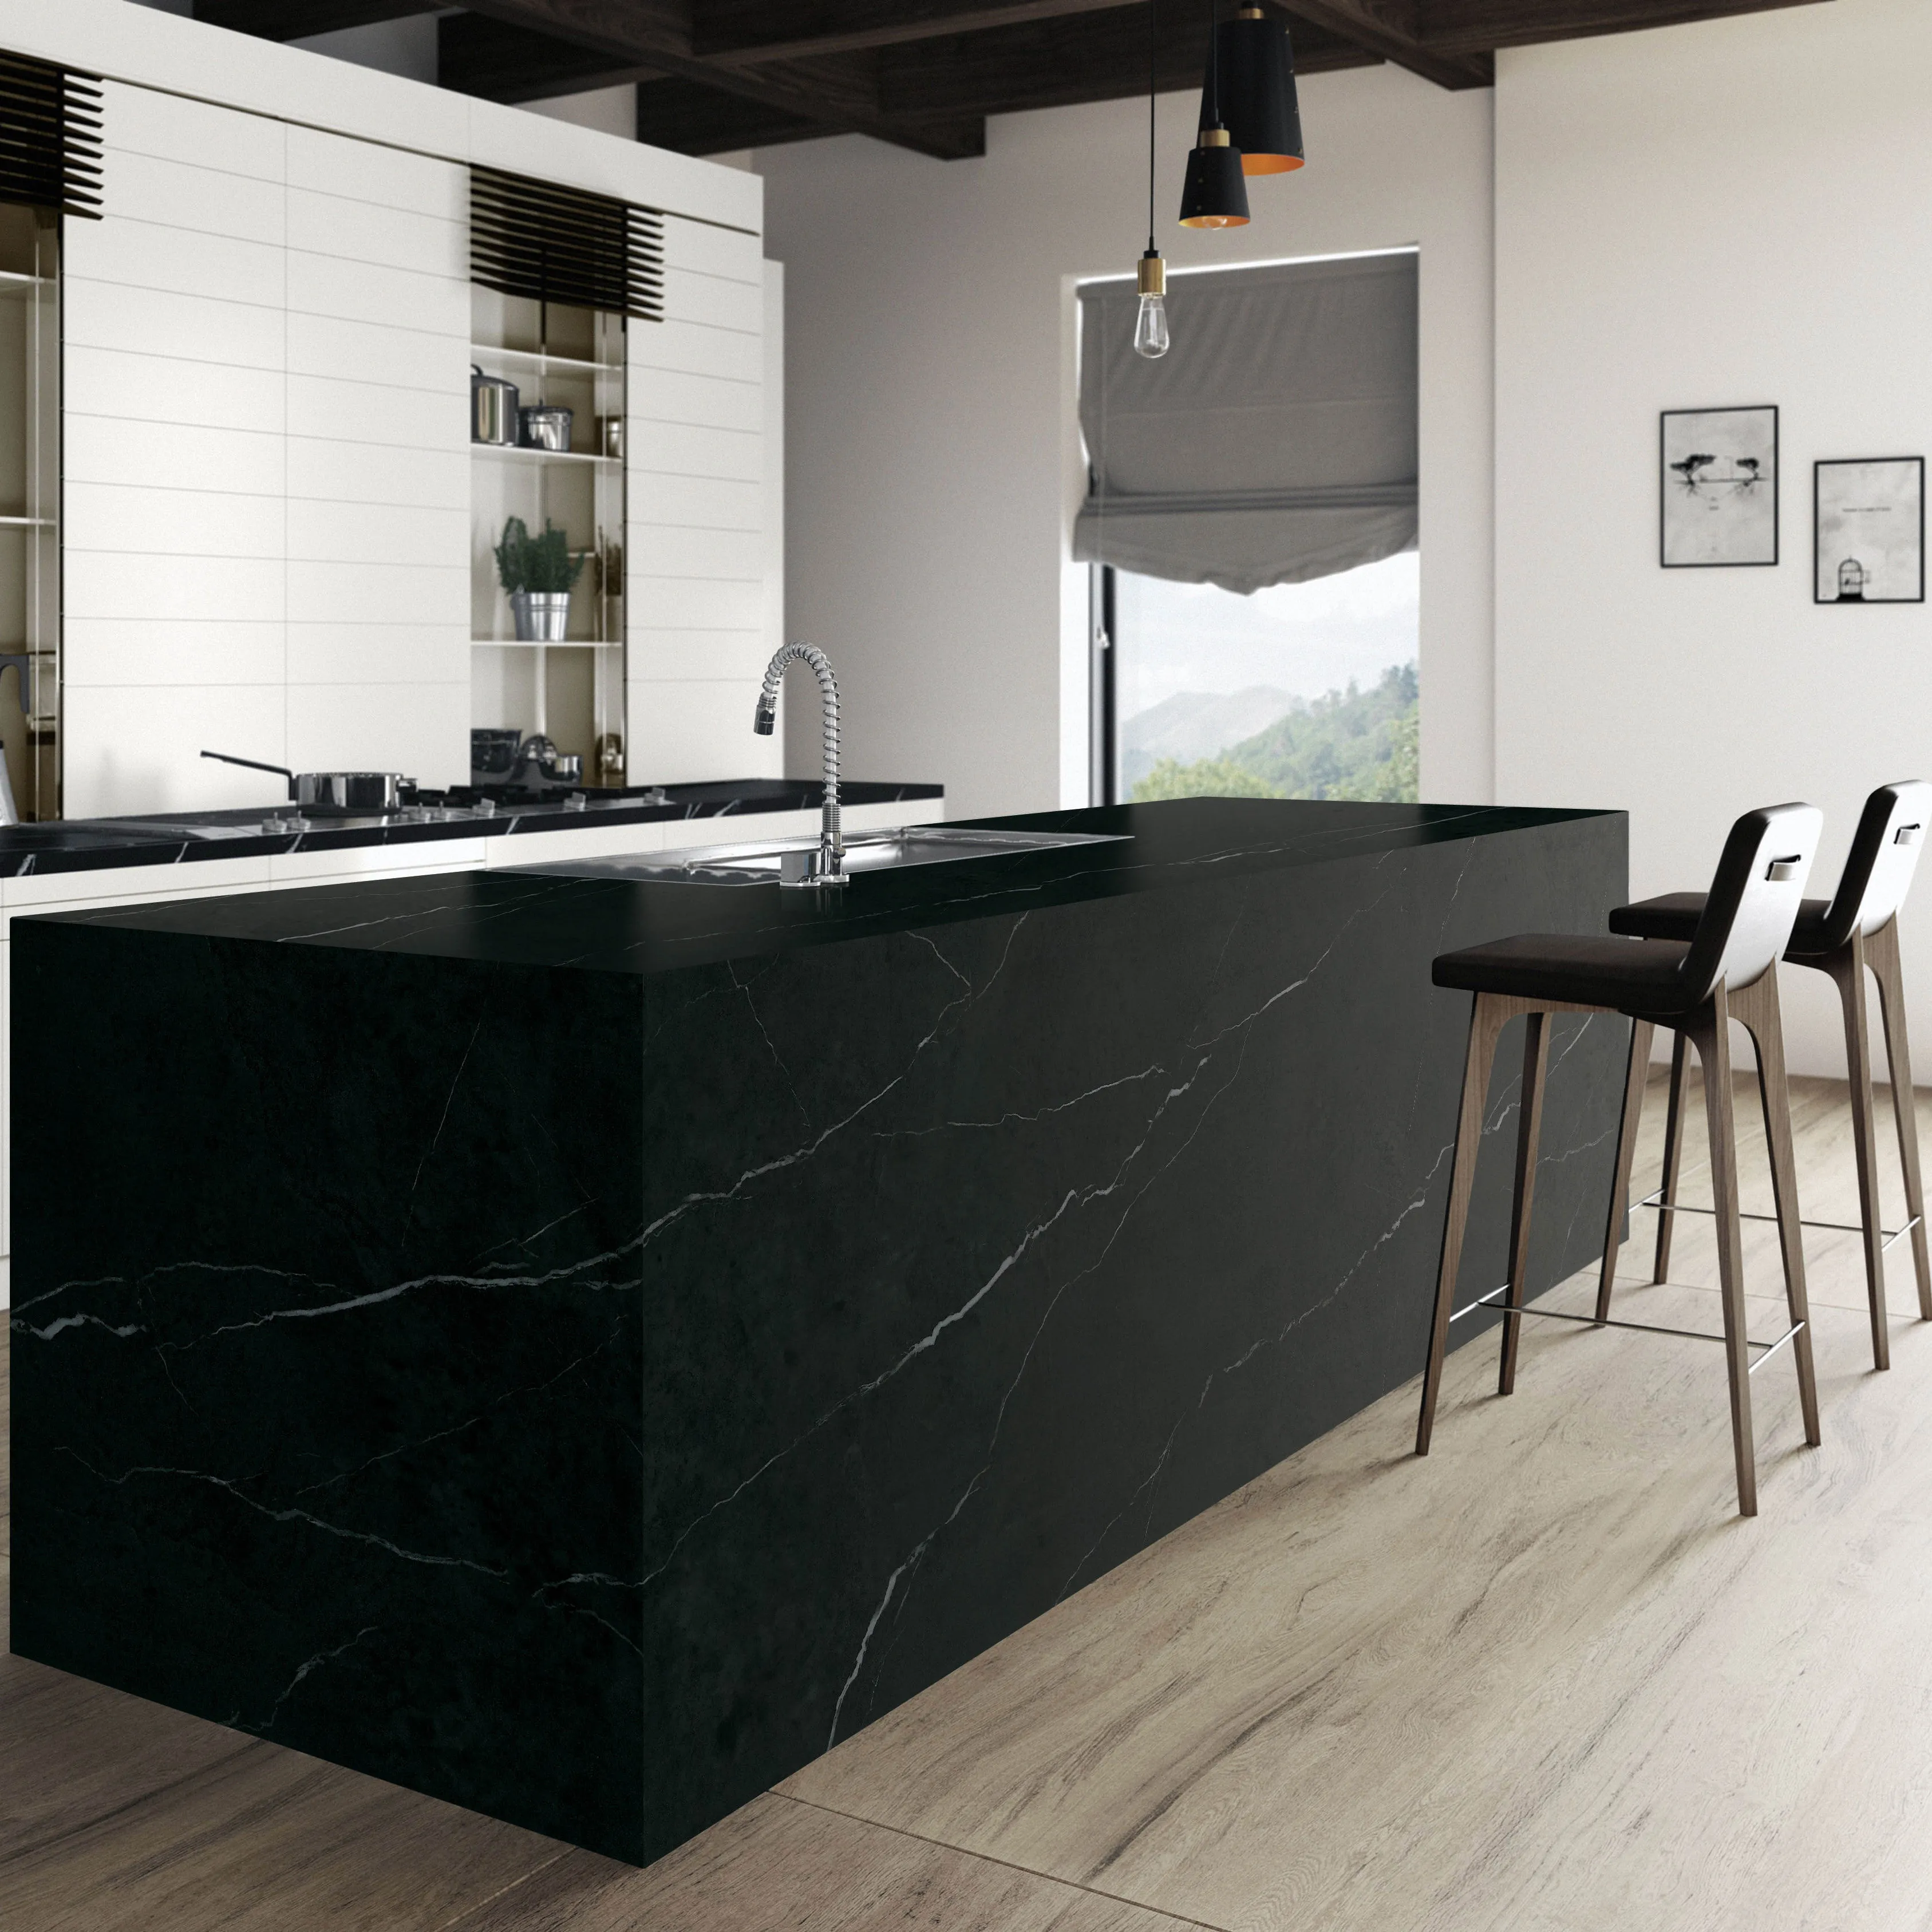 Nero Marquina Schwarz-Weiß-Marmor Porzellan platte Fliesen Boden und Wand Küche Badezimmer Sinter stein